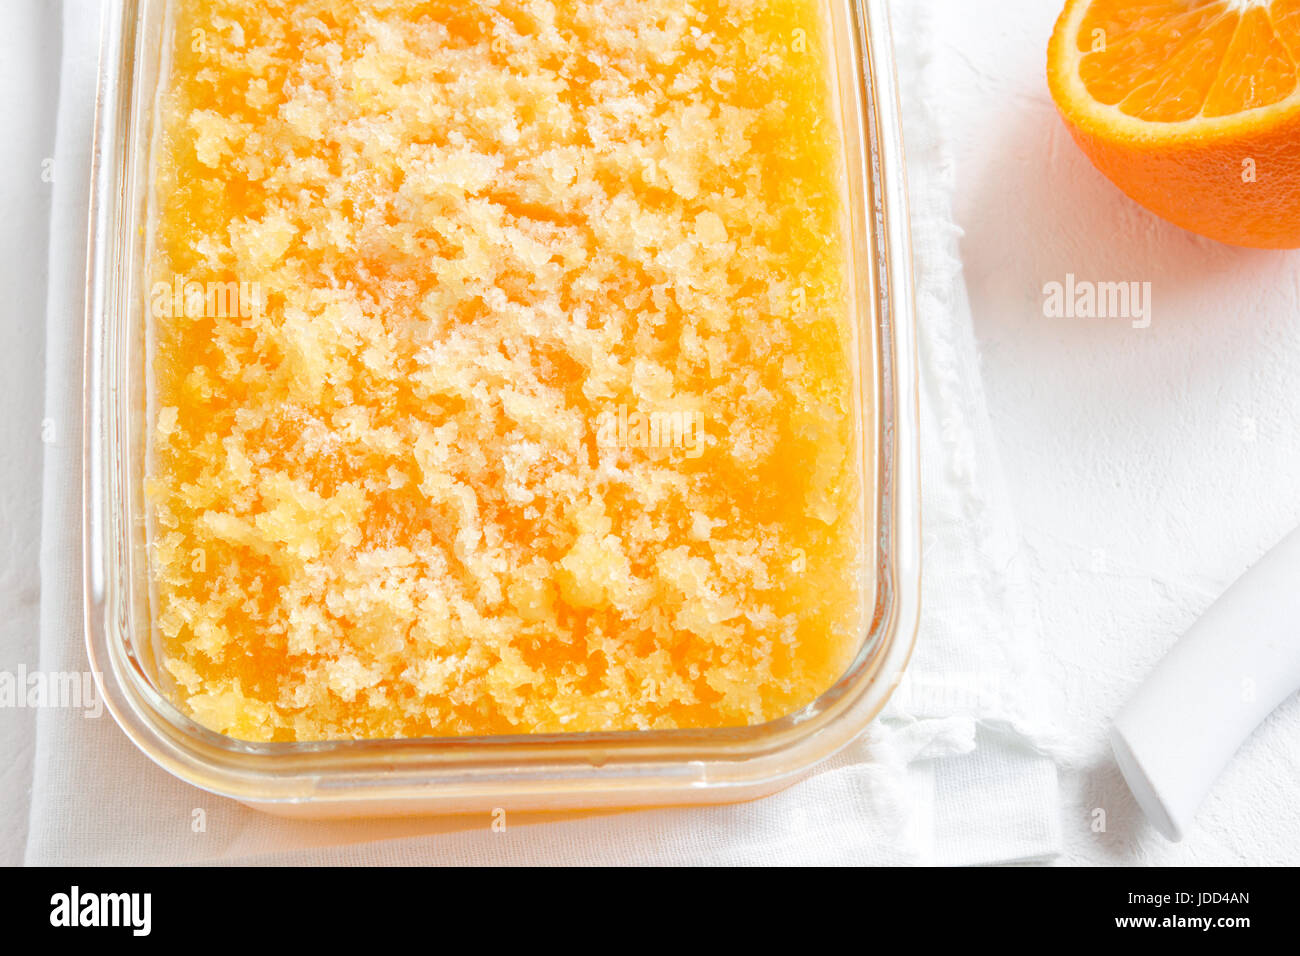 Granita Slush congelés Orange Verre sur table en bois rustique. Granita italienne maison dessert, boisson rafraîchissante Slush d'été. Banque D'Images